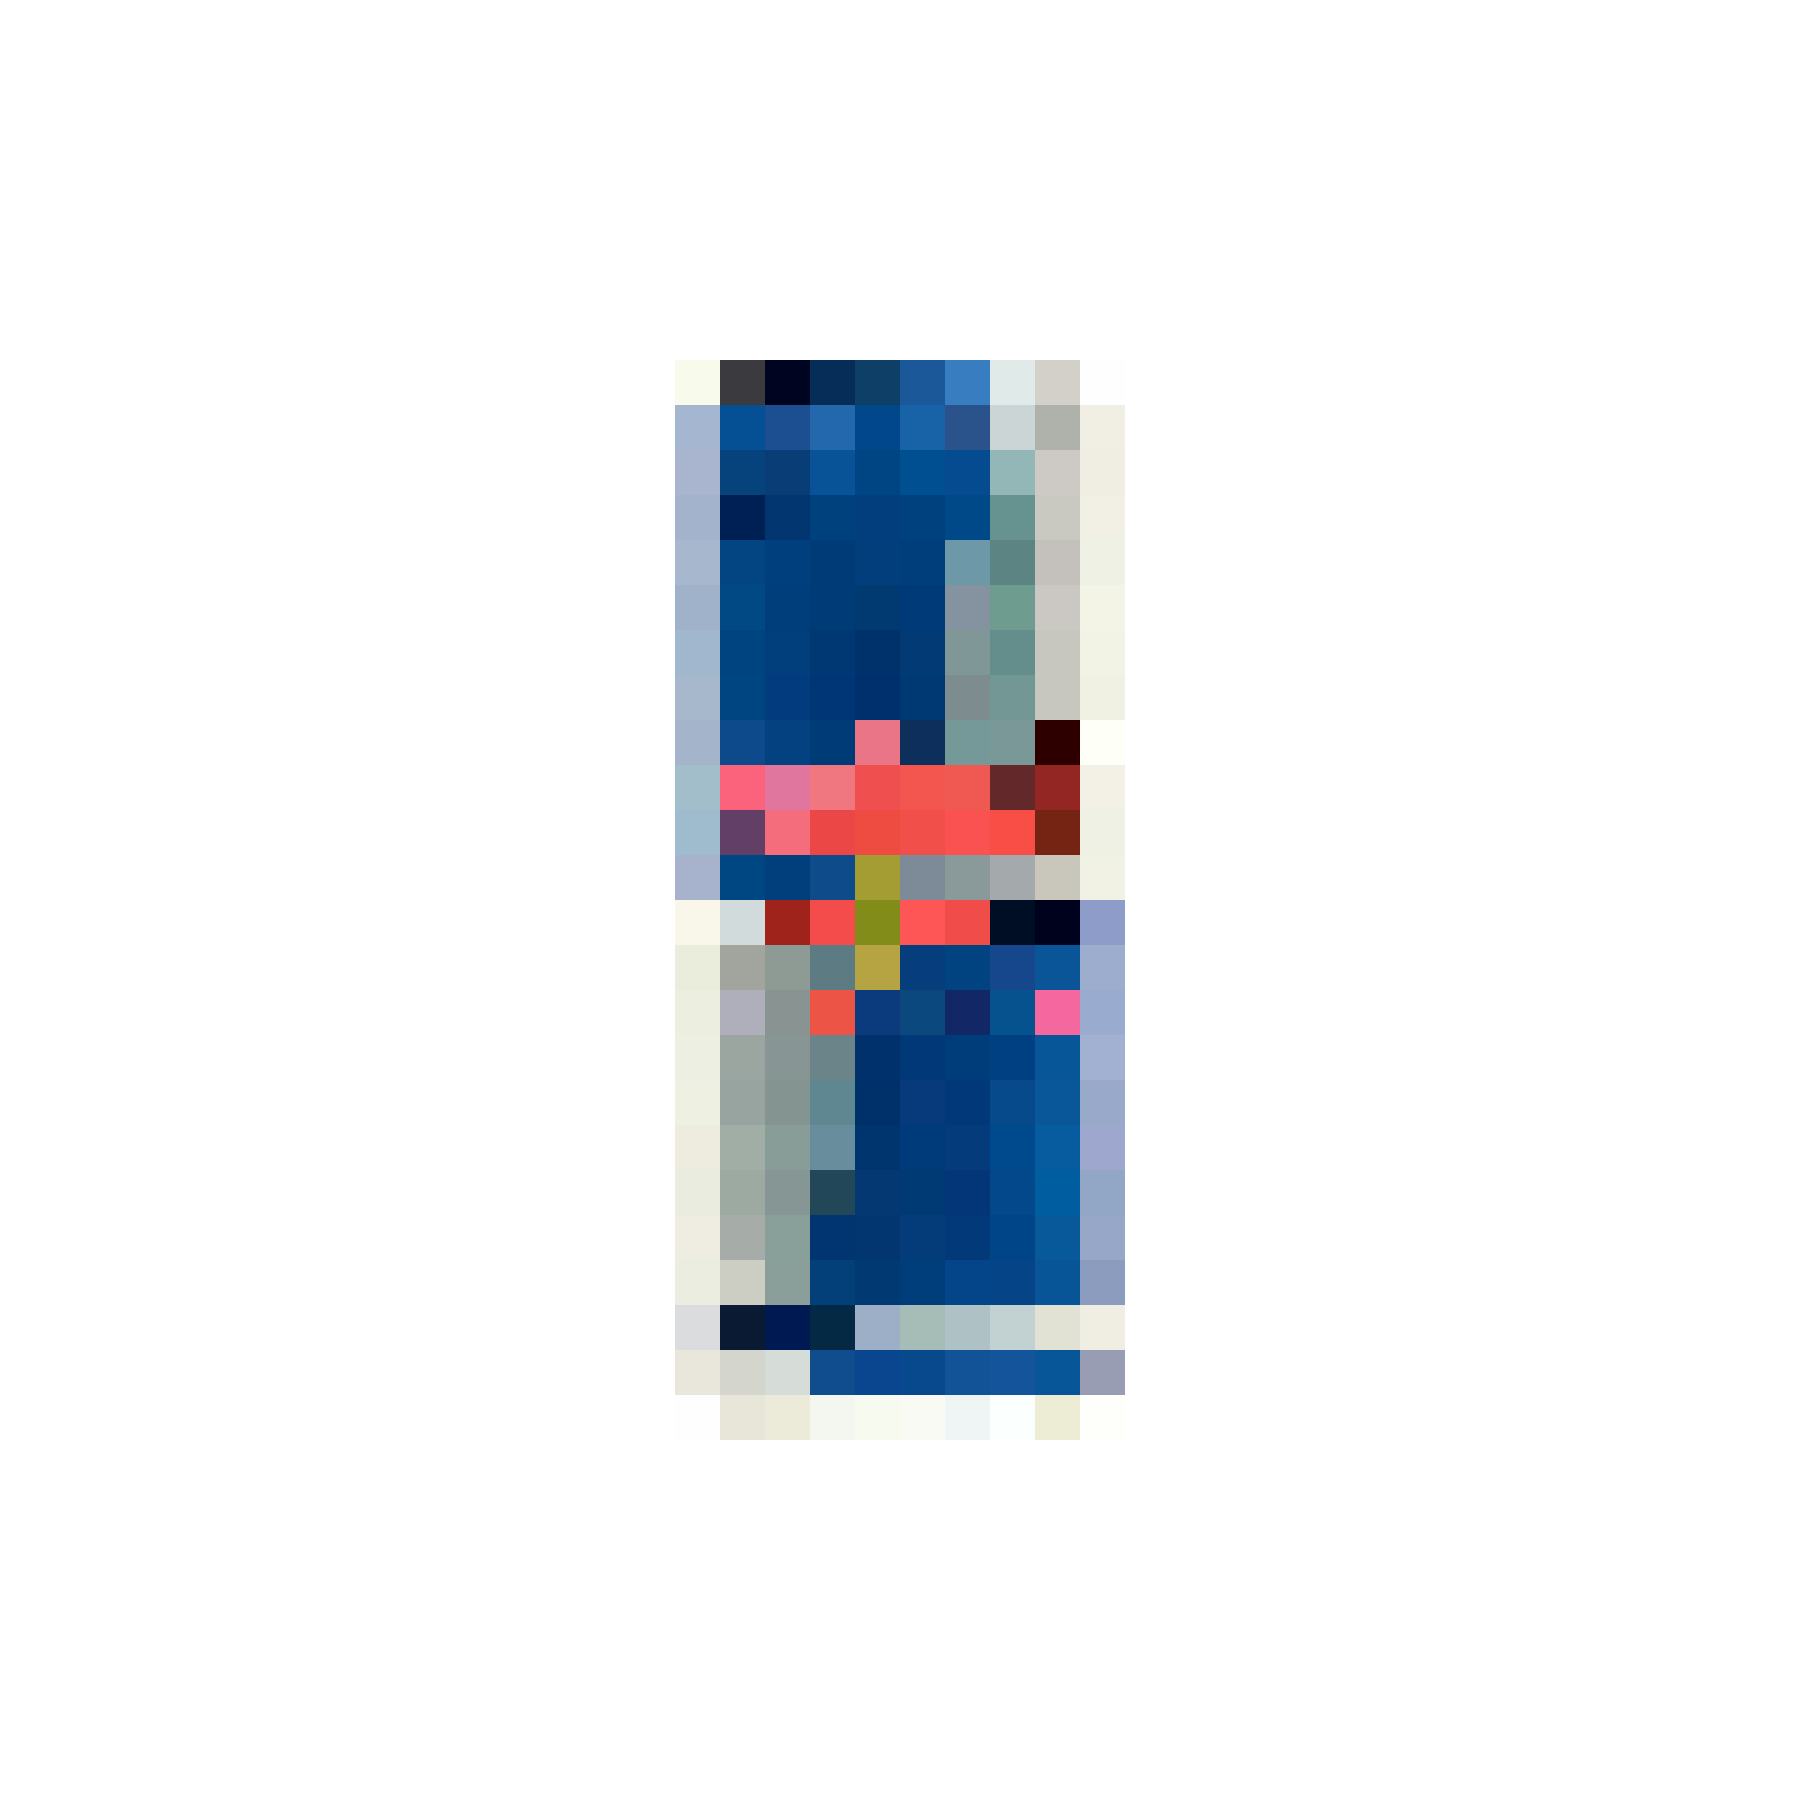 Zum Wachbleiben: Red Bull Energy-Drink, 25 cl, Fr. 1.50, Coop.